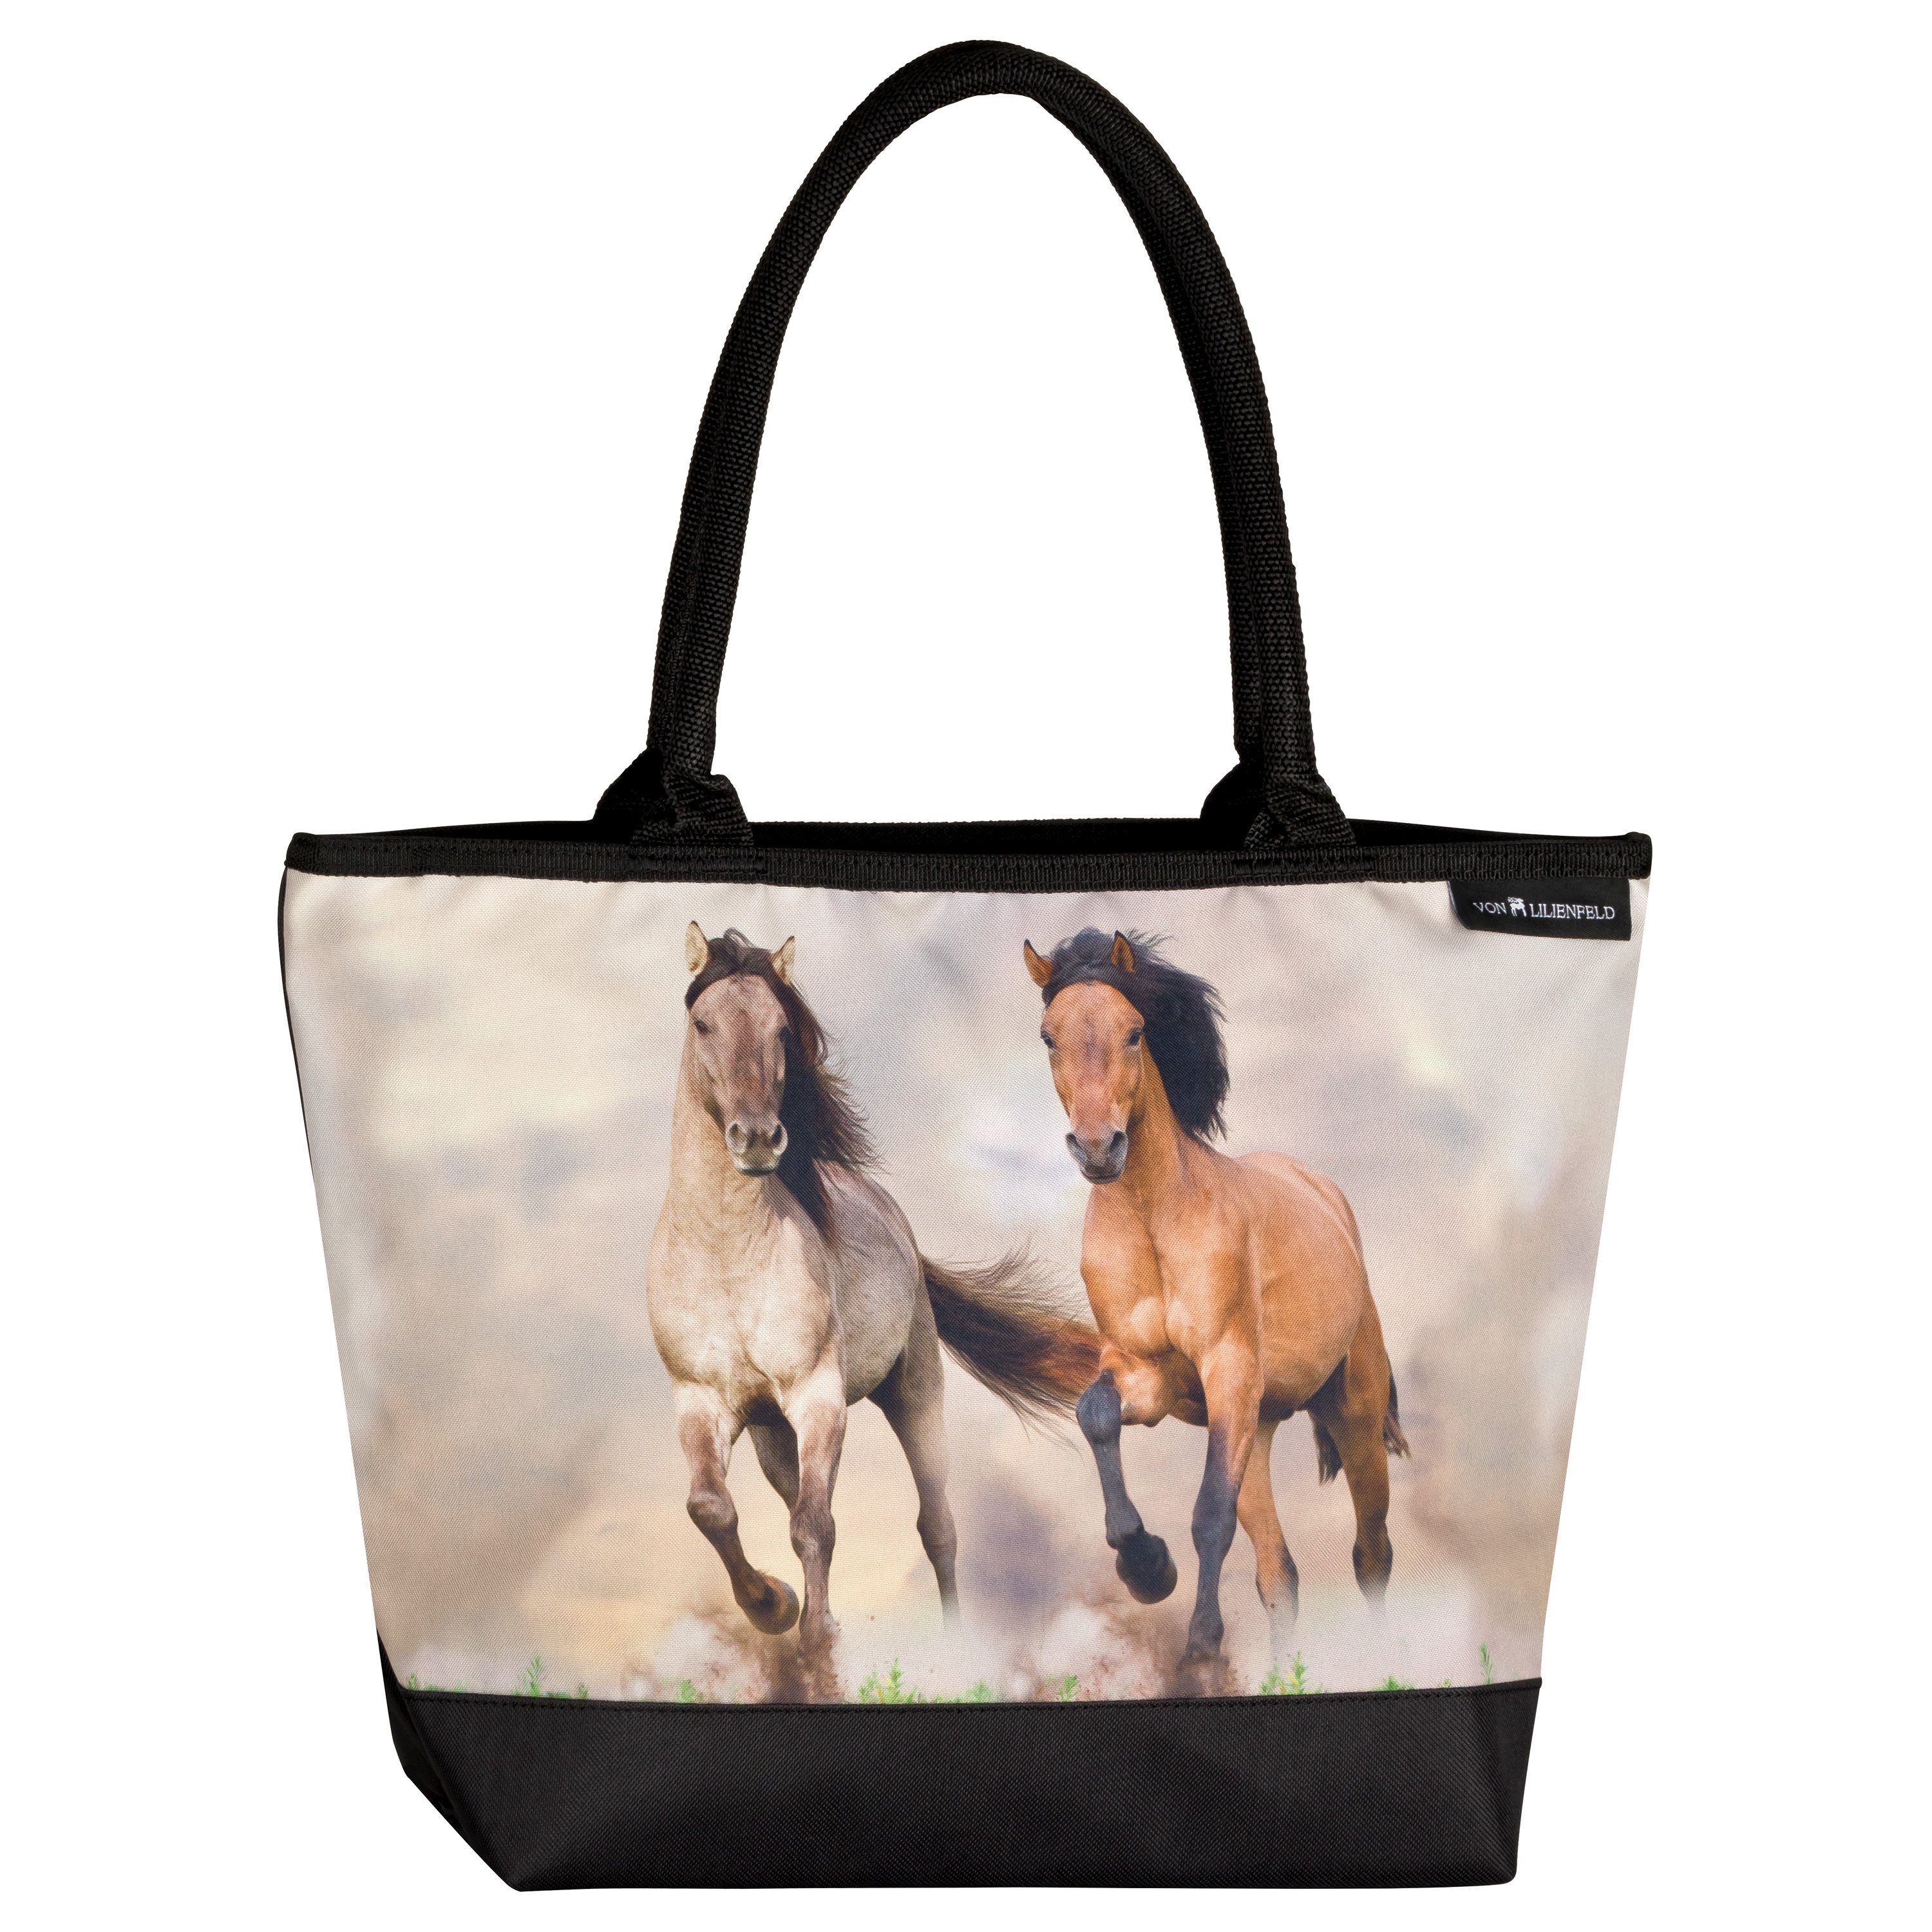 von Lilienfeld Handtasche Shopper mit Motiv Pferd / Mustang / Wildpferde, Tiermotiv auf der Vorderseite